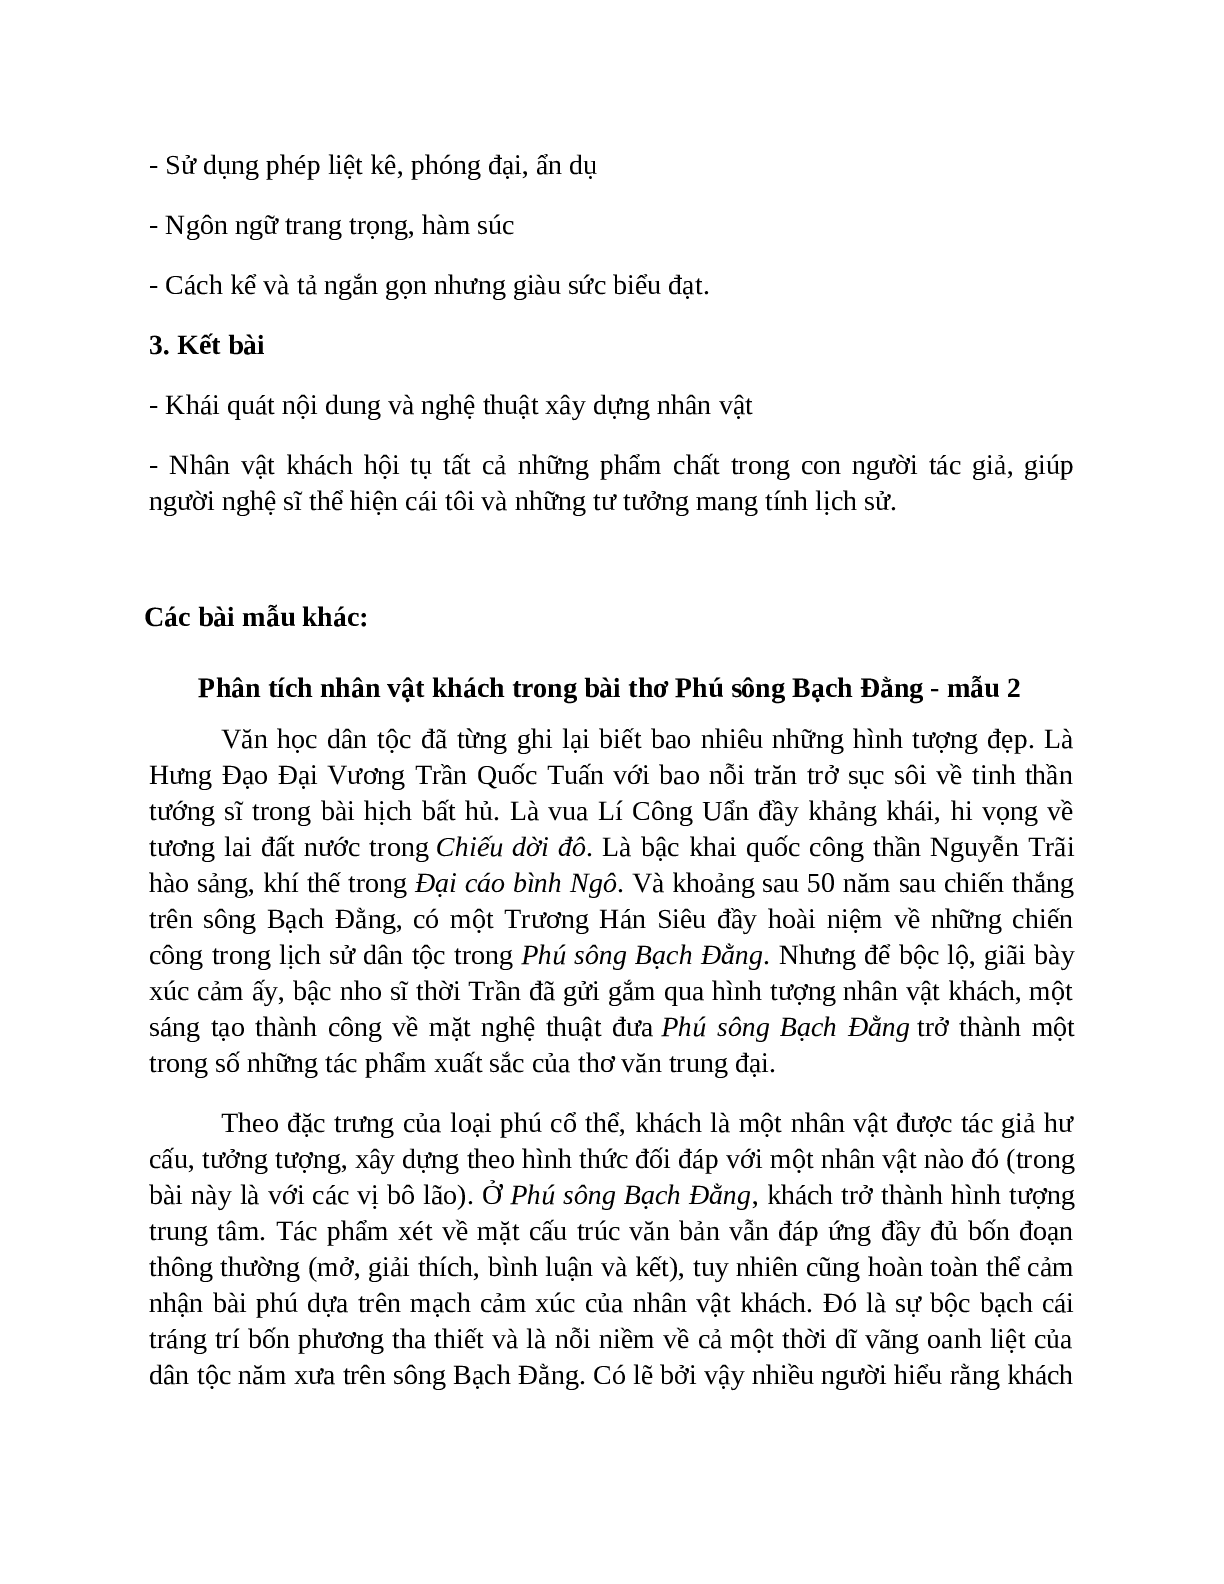 TOP 17 bài mẫu Phân tích nhân vật khách trong bài thơ Phú sông Bạch Đằng SIÊU HAY (trang 8)